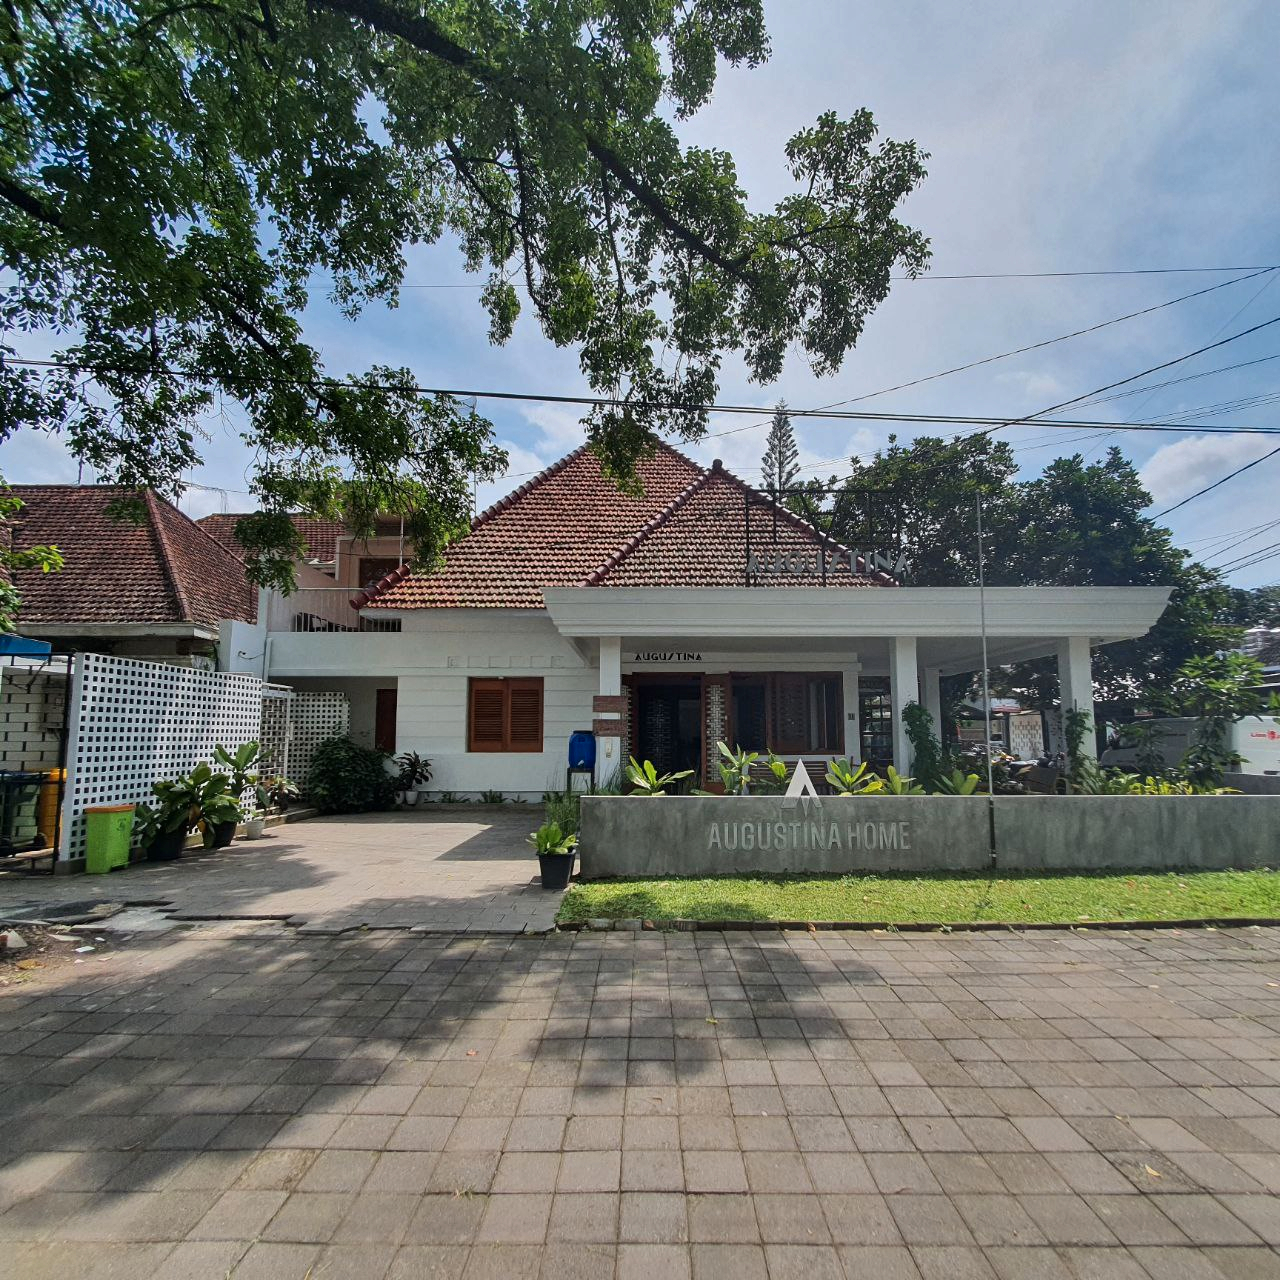 Exterior & Views 1, Augustina Home Malang, Malang